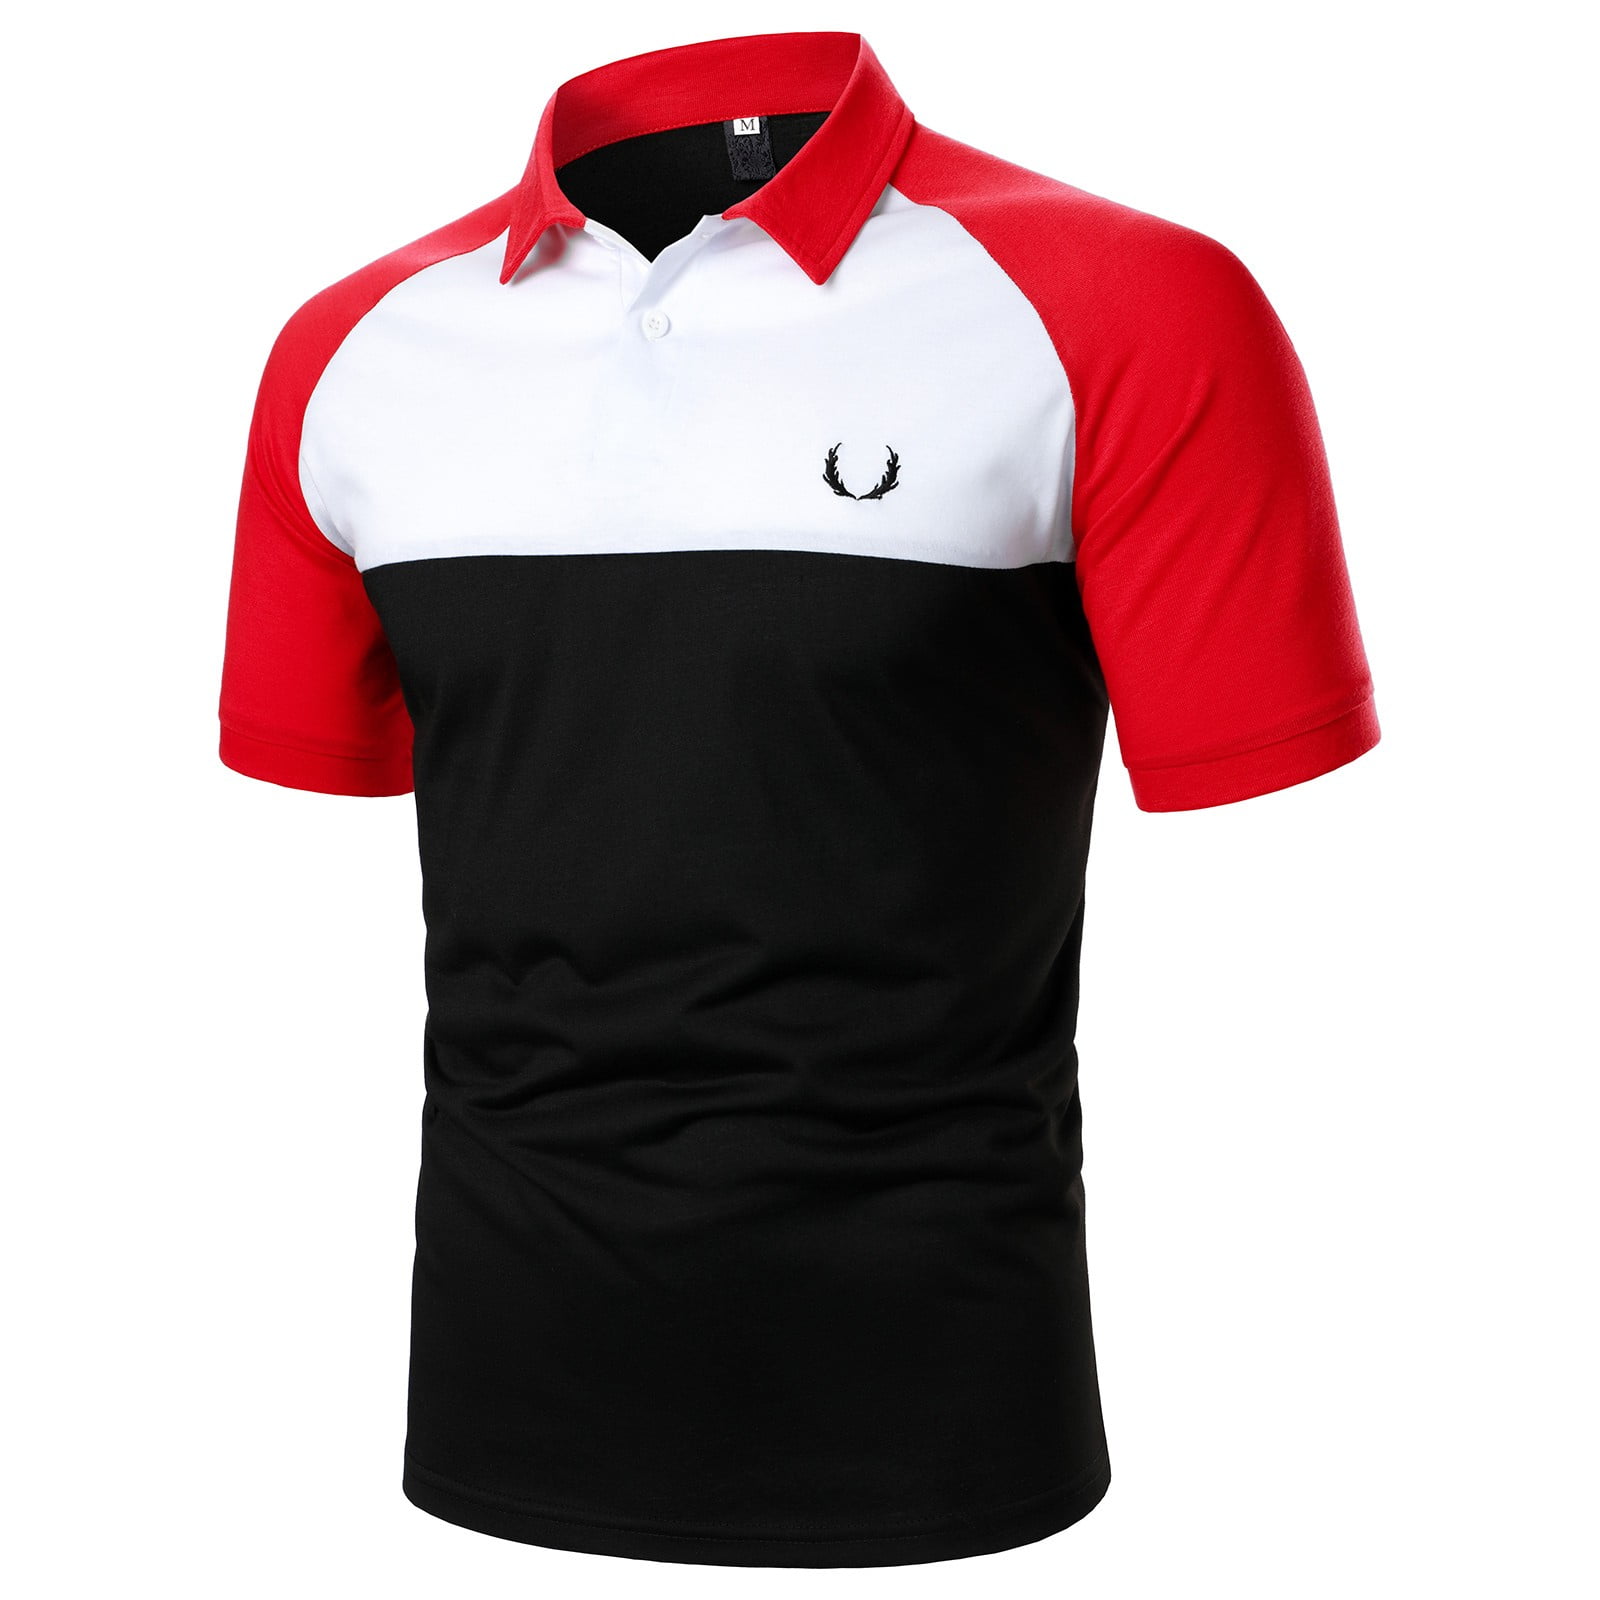 Pedort Golf Polos For Men Men's Pique Polo Shirts Short Sleeve Cotton ...